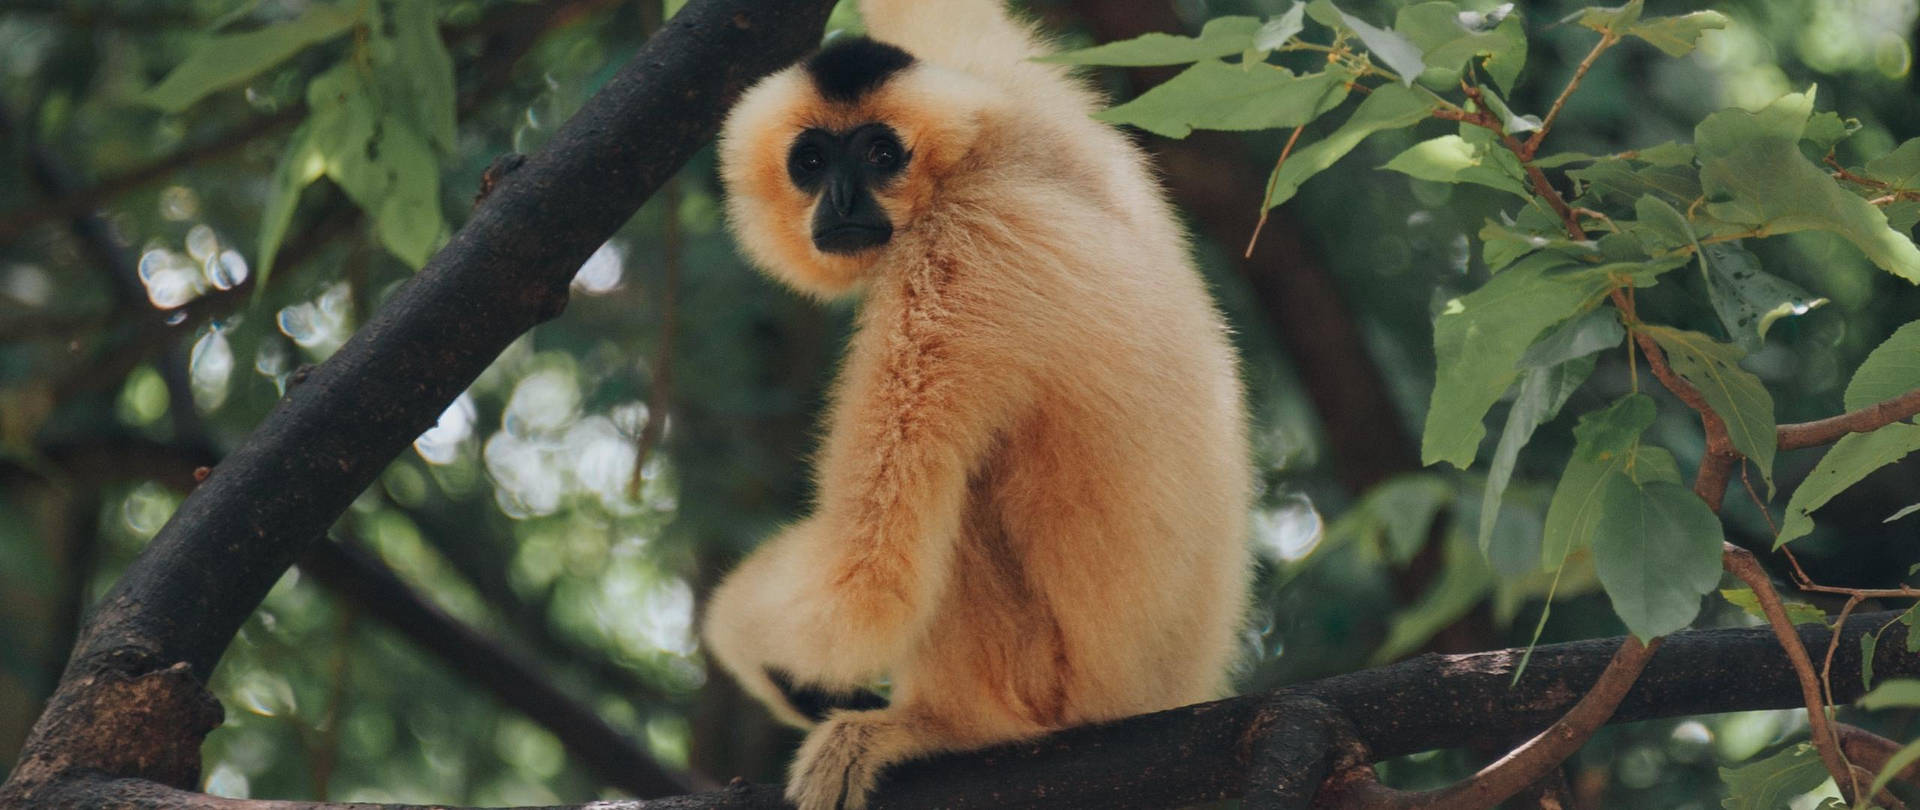 Gibbon Looking At Camera Wallpaper